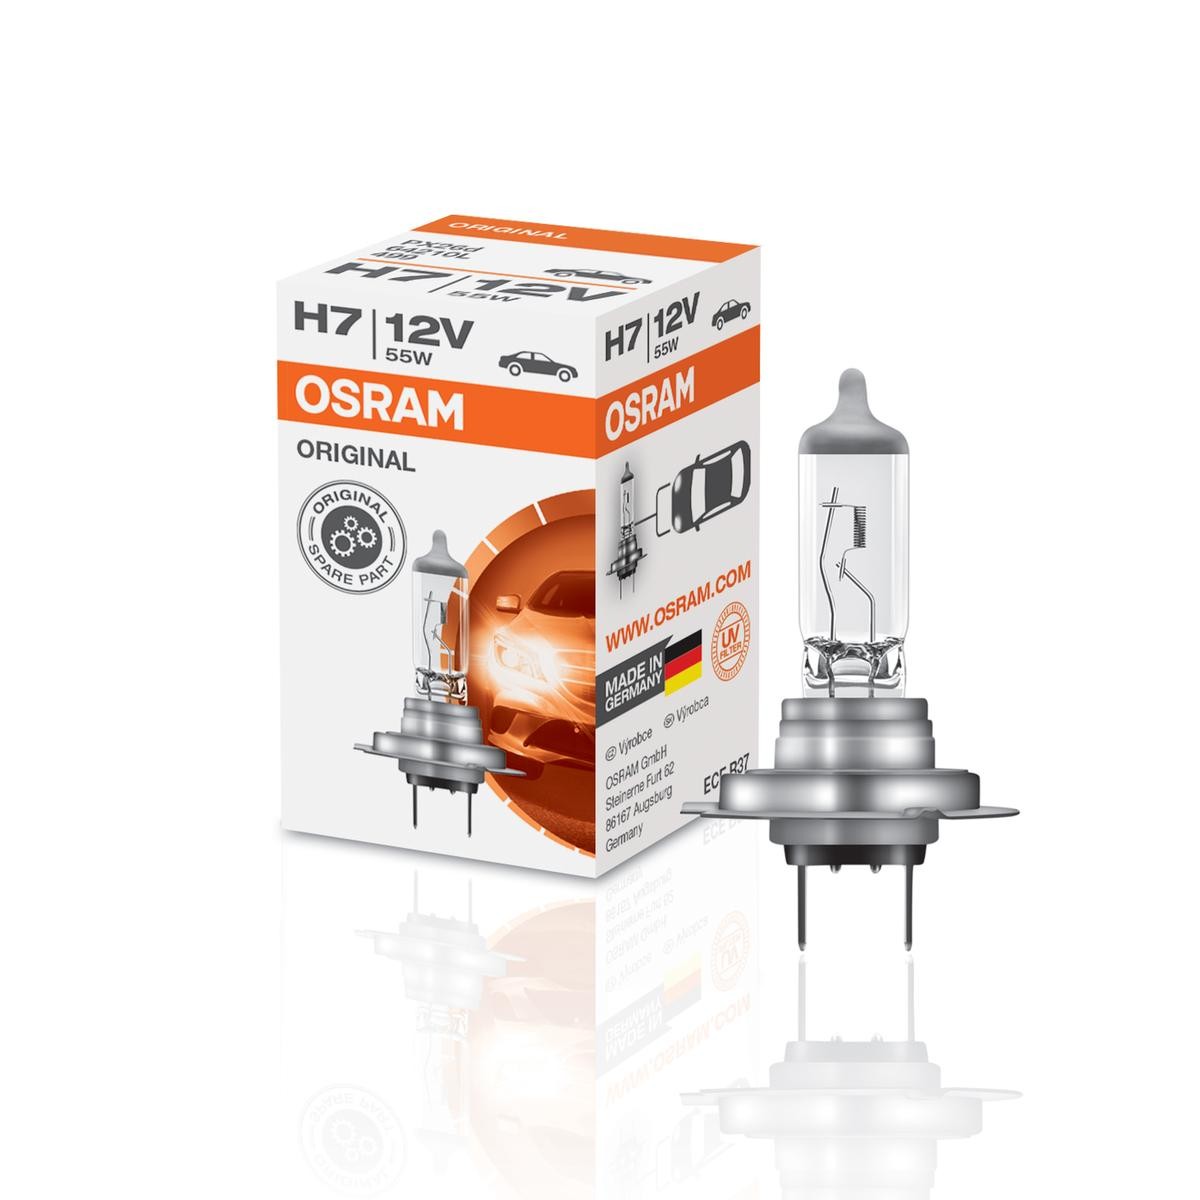 Acheter OSRAM ULTRA LIFE H7 Lampe halogène pour projecteur 64210ULT